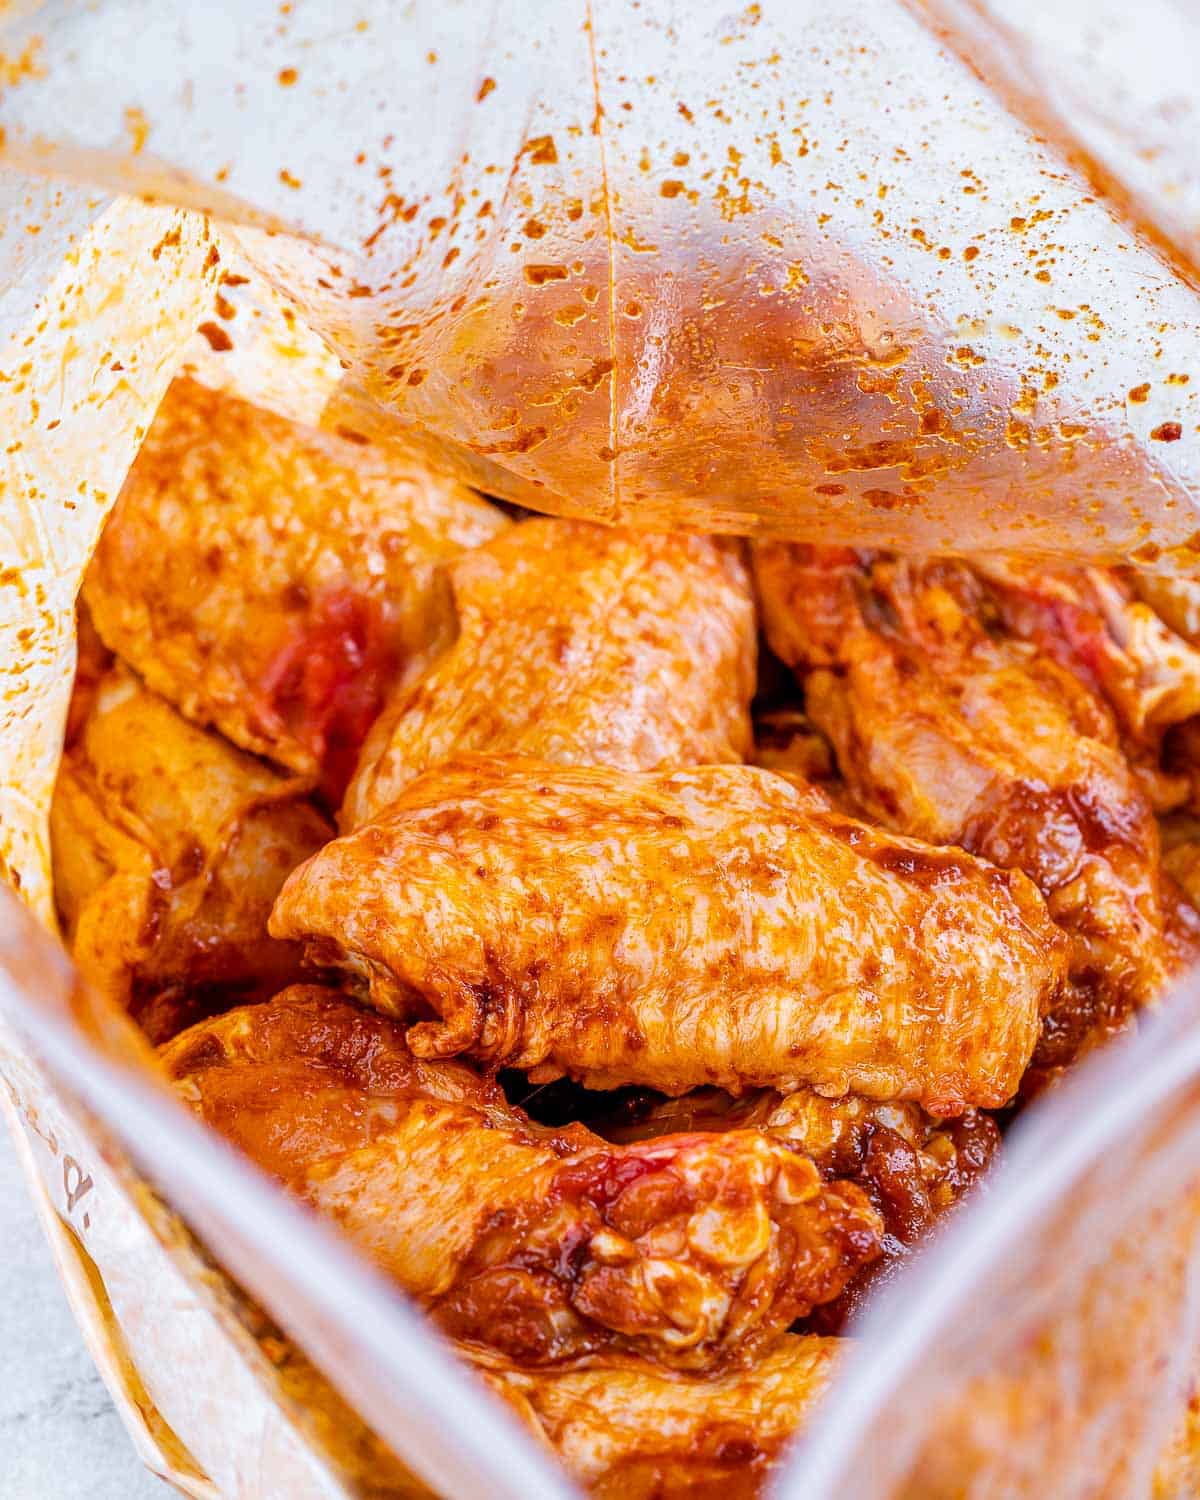 Chicken wings in Ziplock bag with seasonings and oil. 